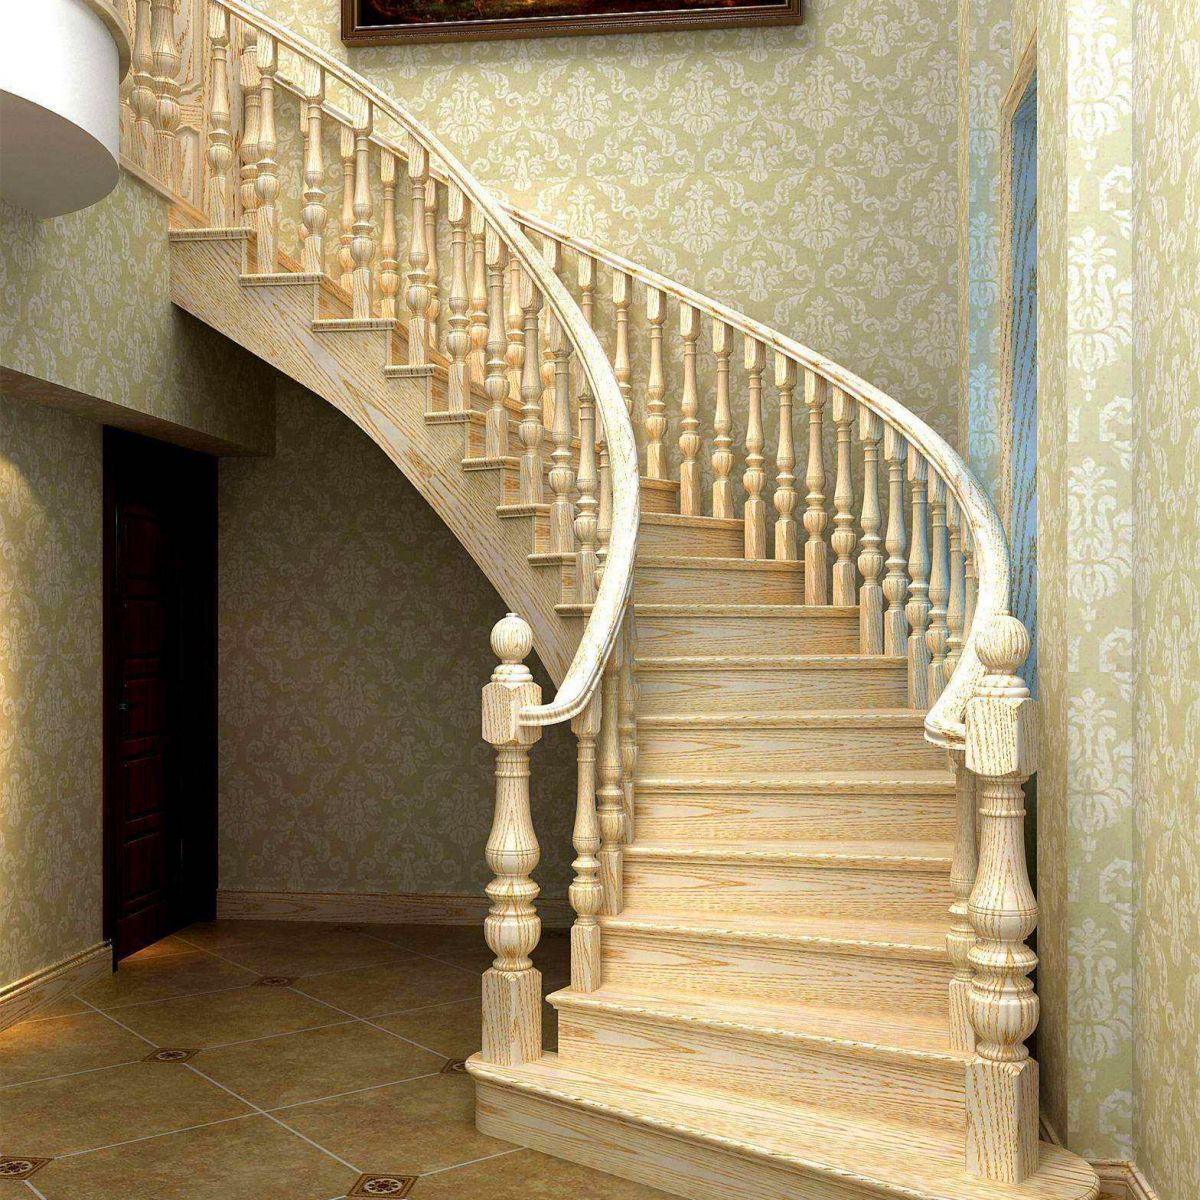 家用简约楼梯扶手可以这样设计-搜狐大视野-搜狐新闻